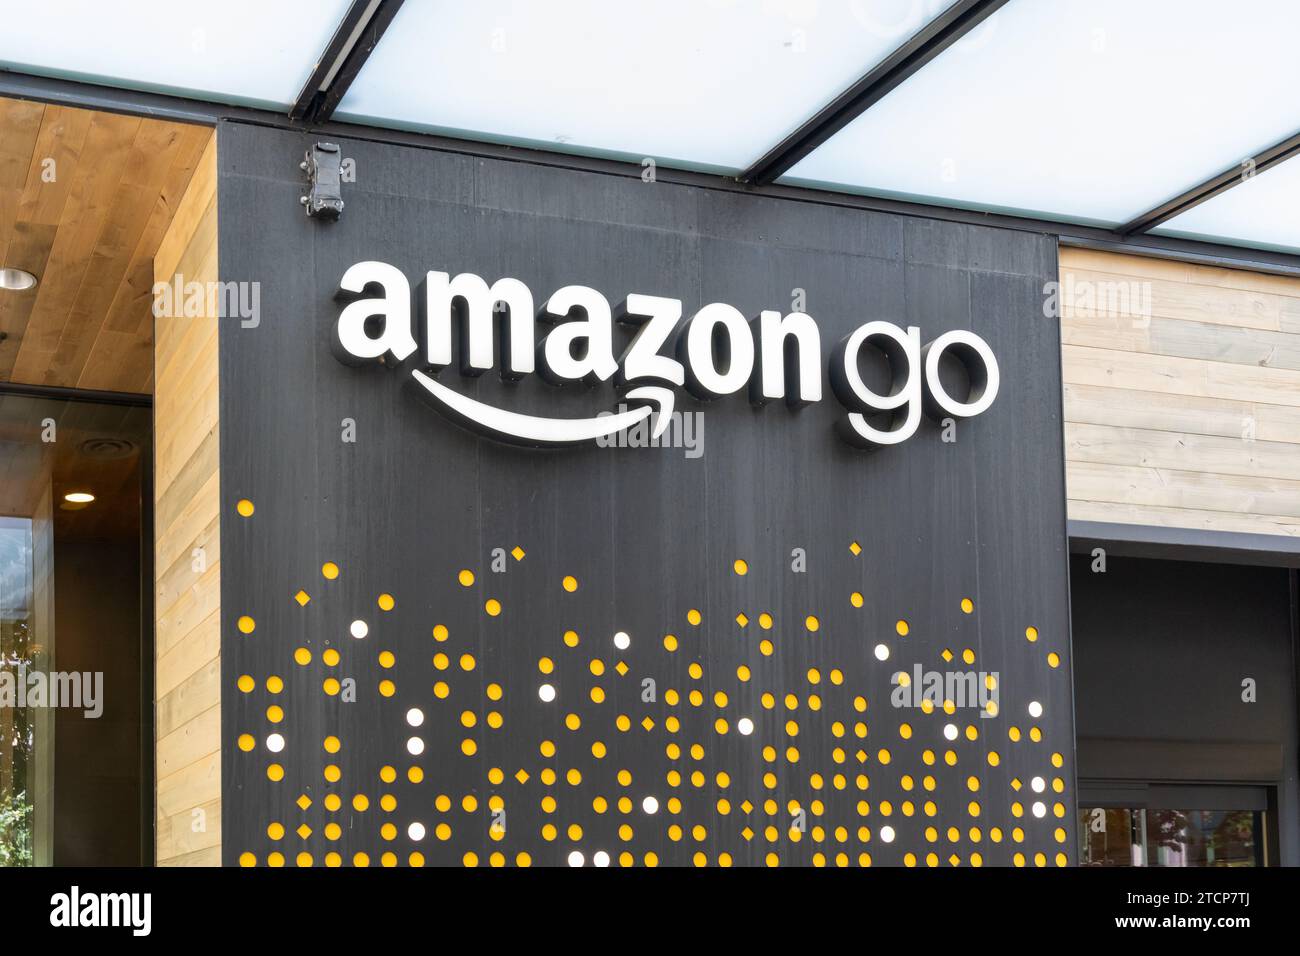 An Amazon Go store in Seattle, Washington, USA Stock Photo